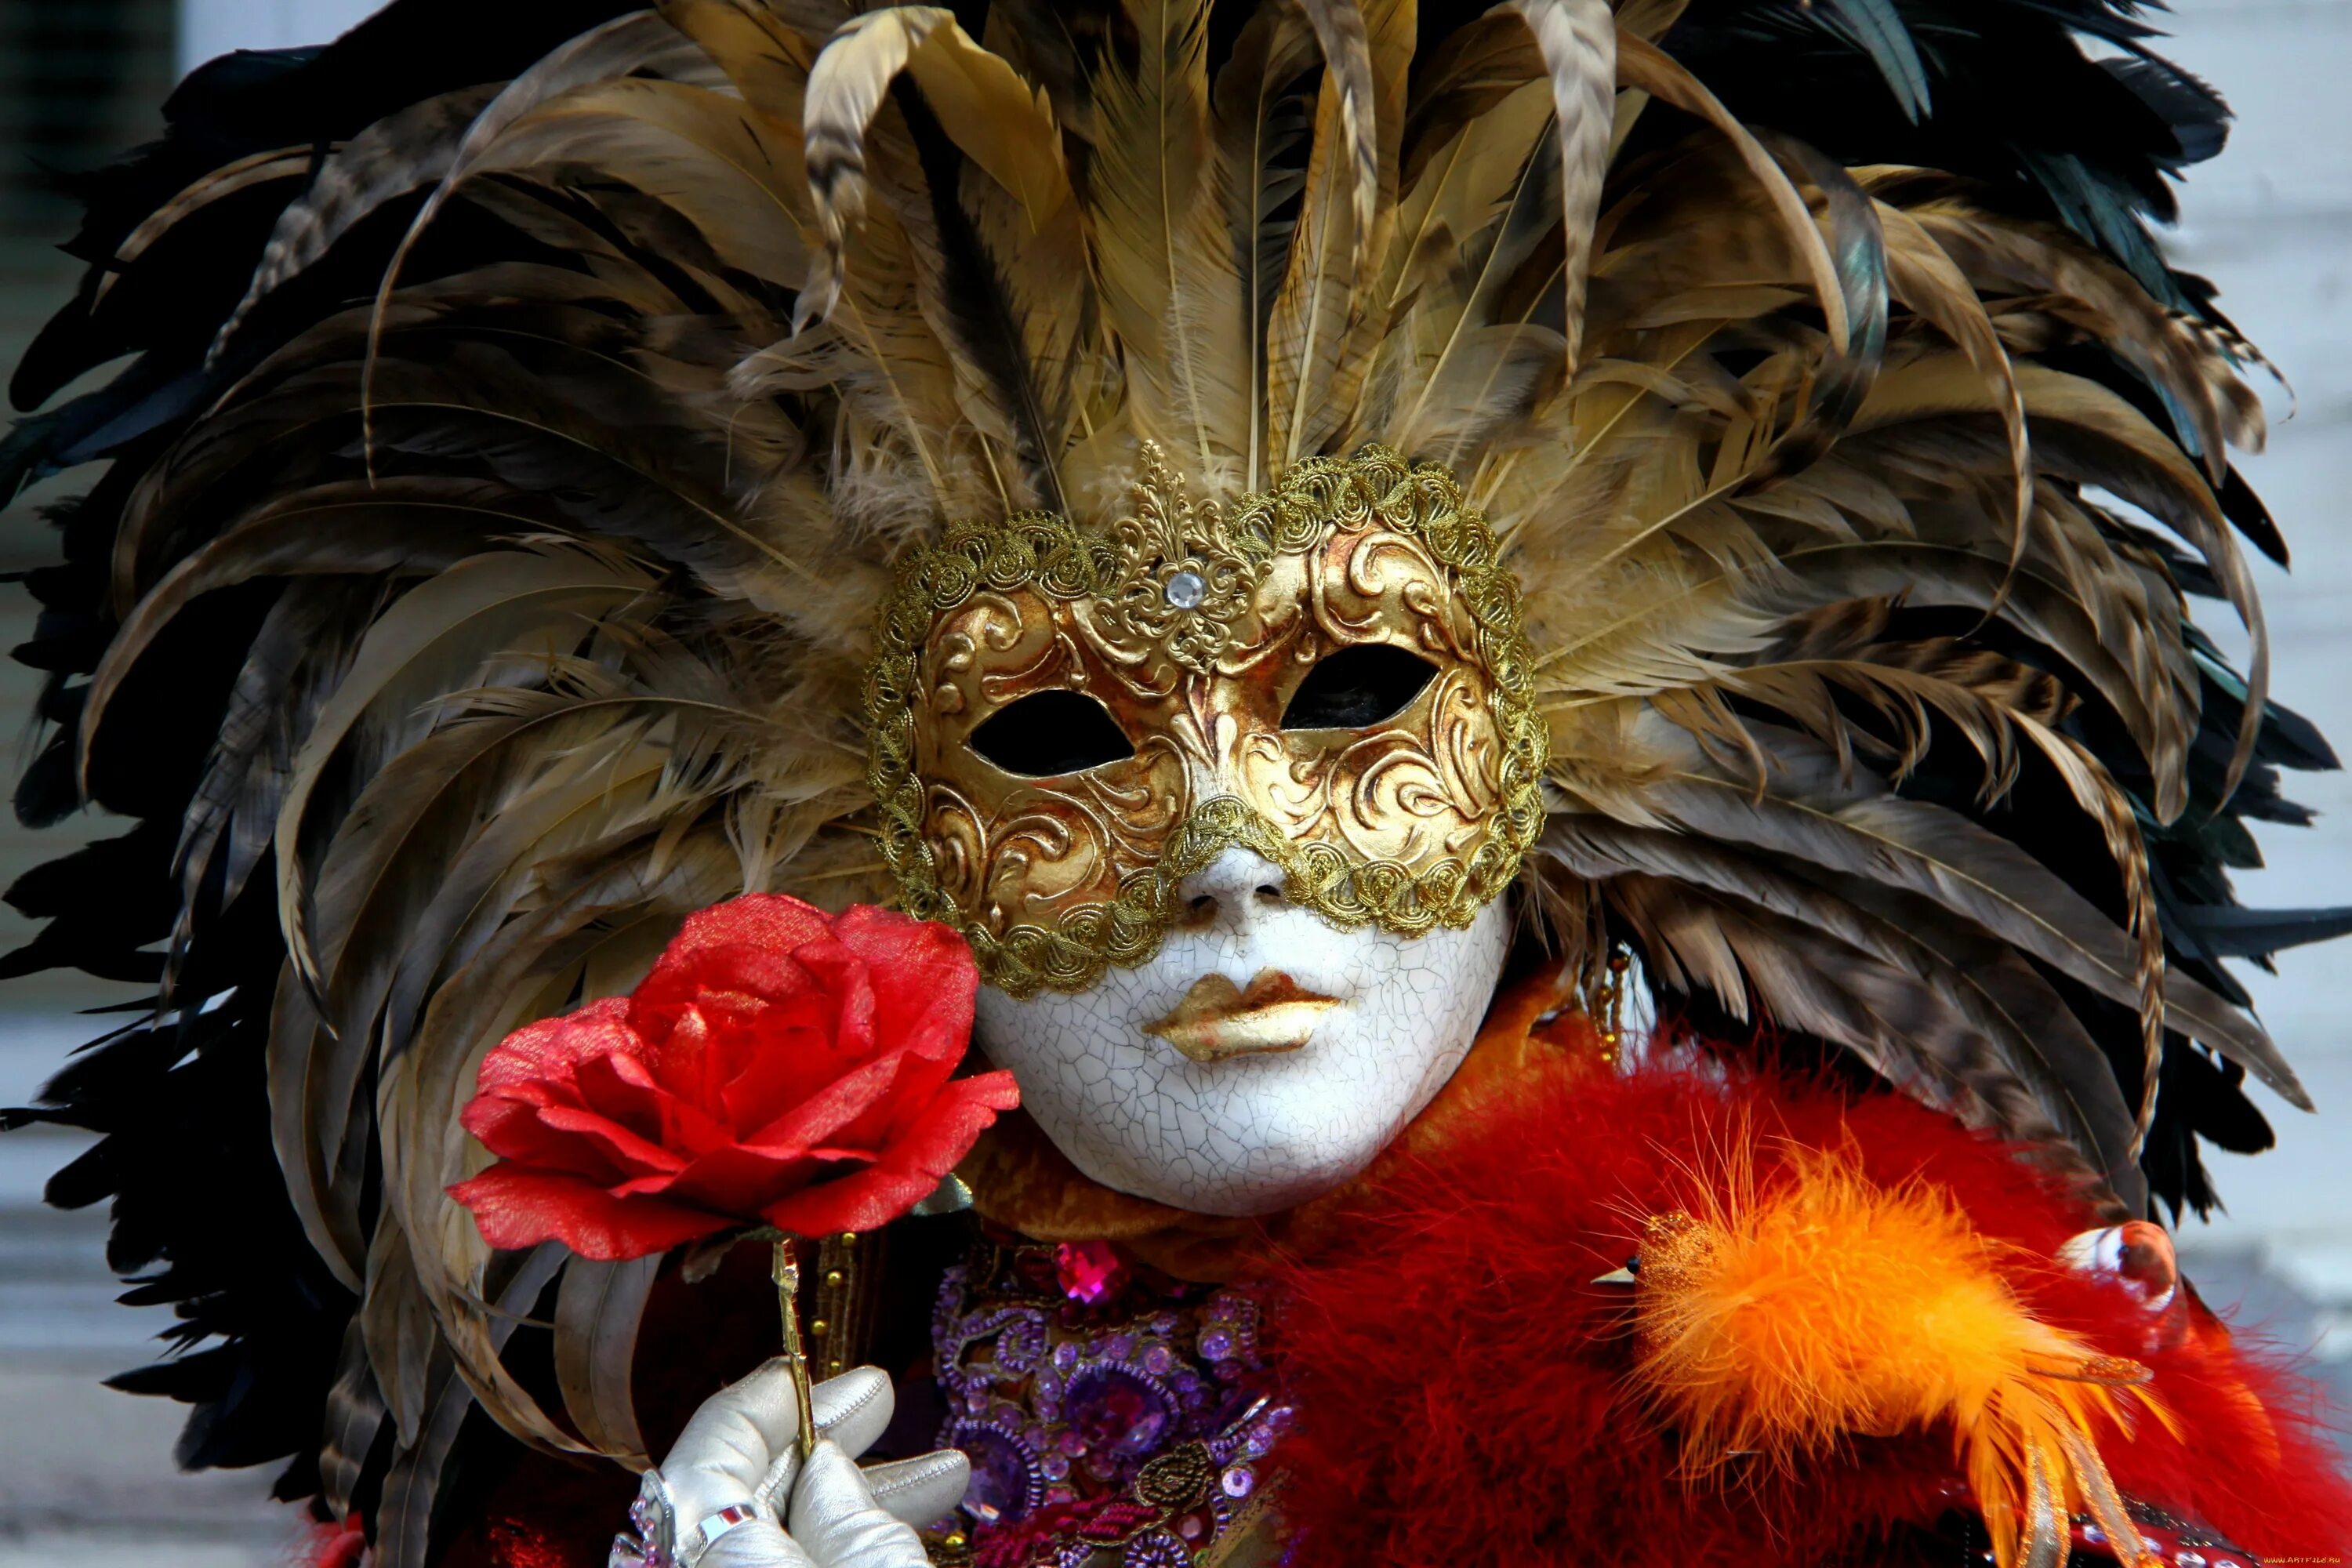 Маска Венеция для карнавала. Венецианский карнавал Коломбина. Венецианскаямаска - «венецианская дама». Маска Венецианского карнавала Коломбина. Карнавальный человек